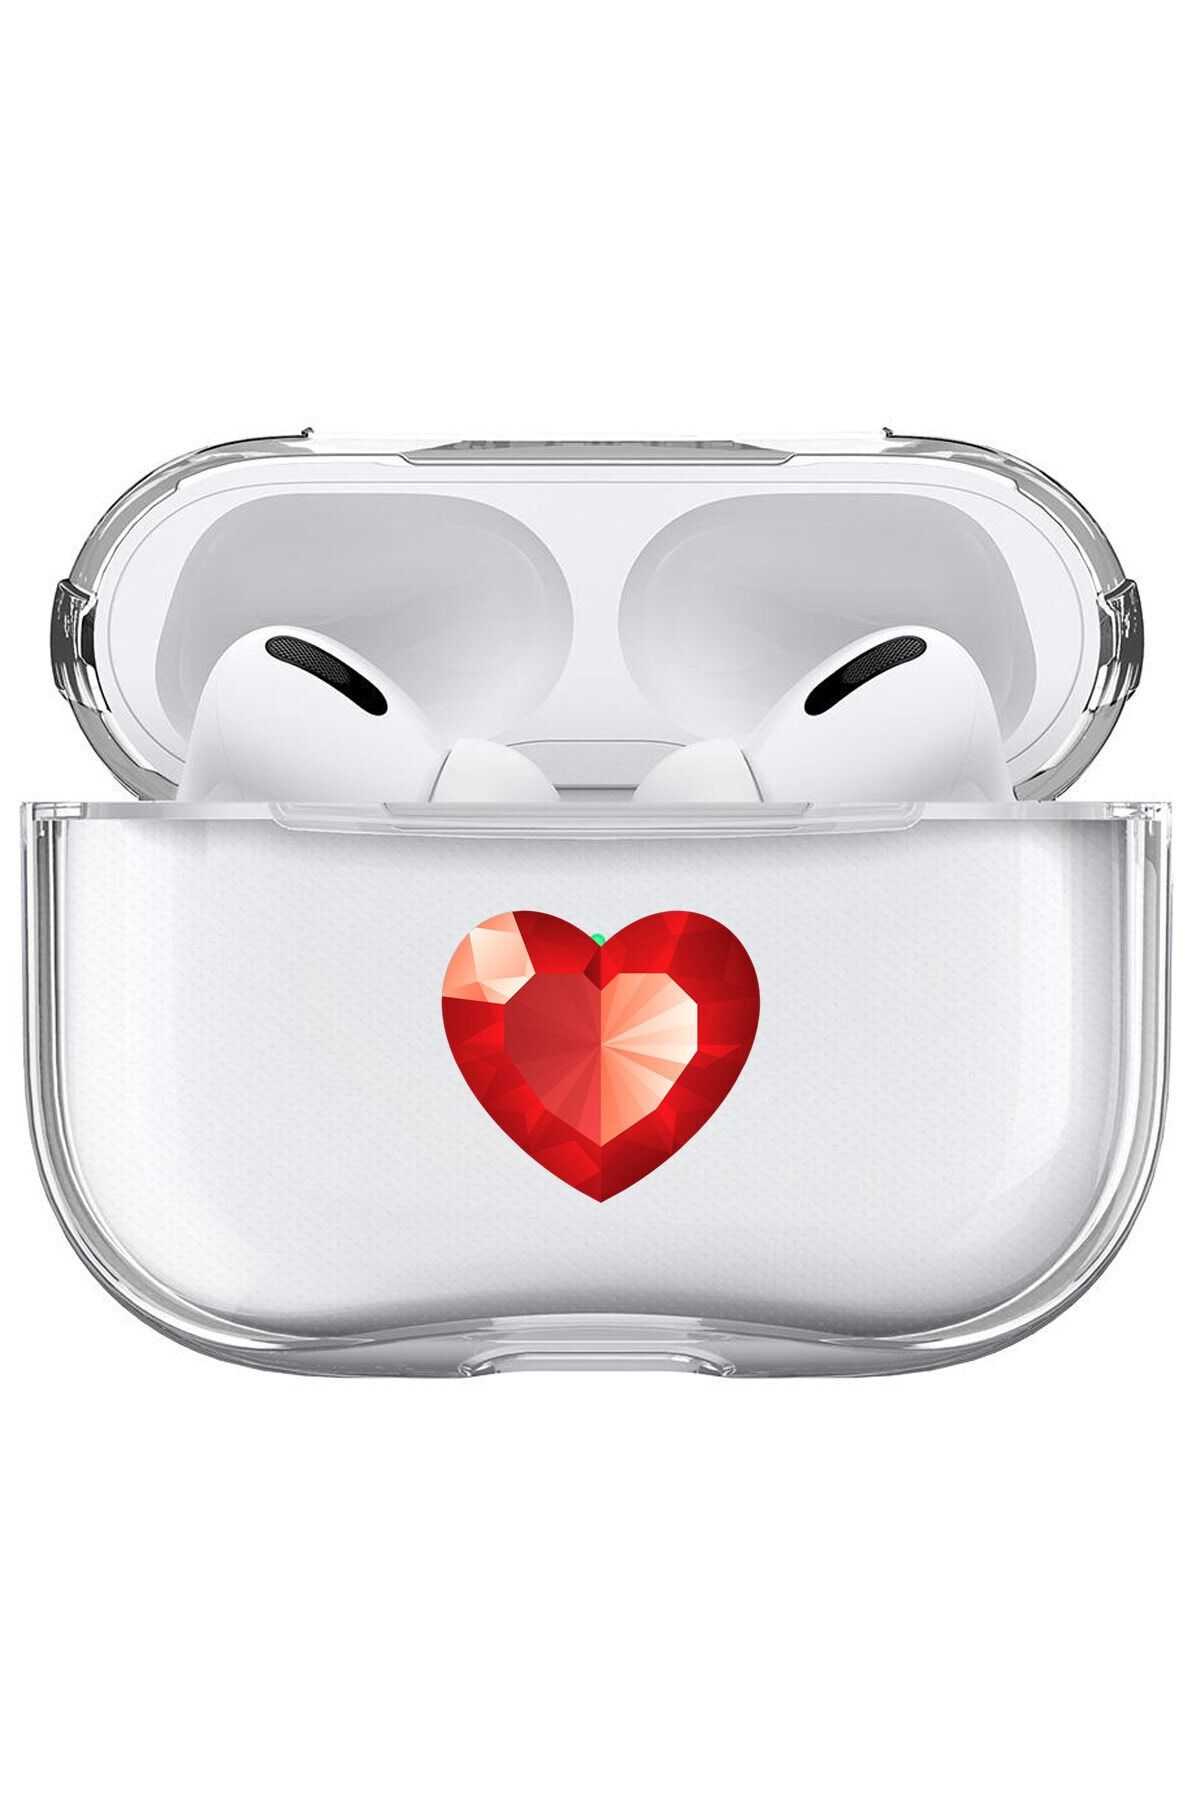 Cekuonline Apple Airpods Pro Uyumlu Kılıf Desenli Şeffaf Sert Kapak - Kristal Kalp.